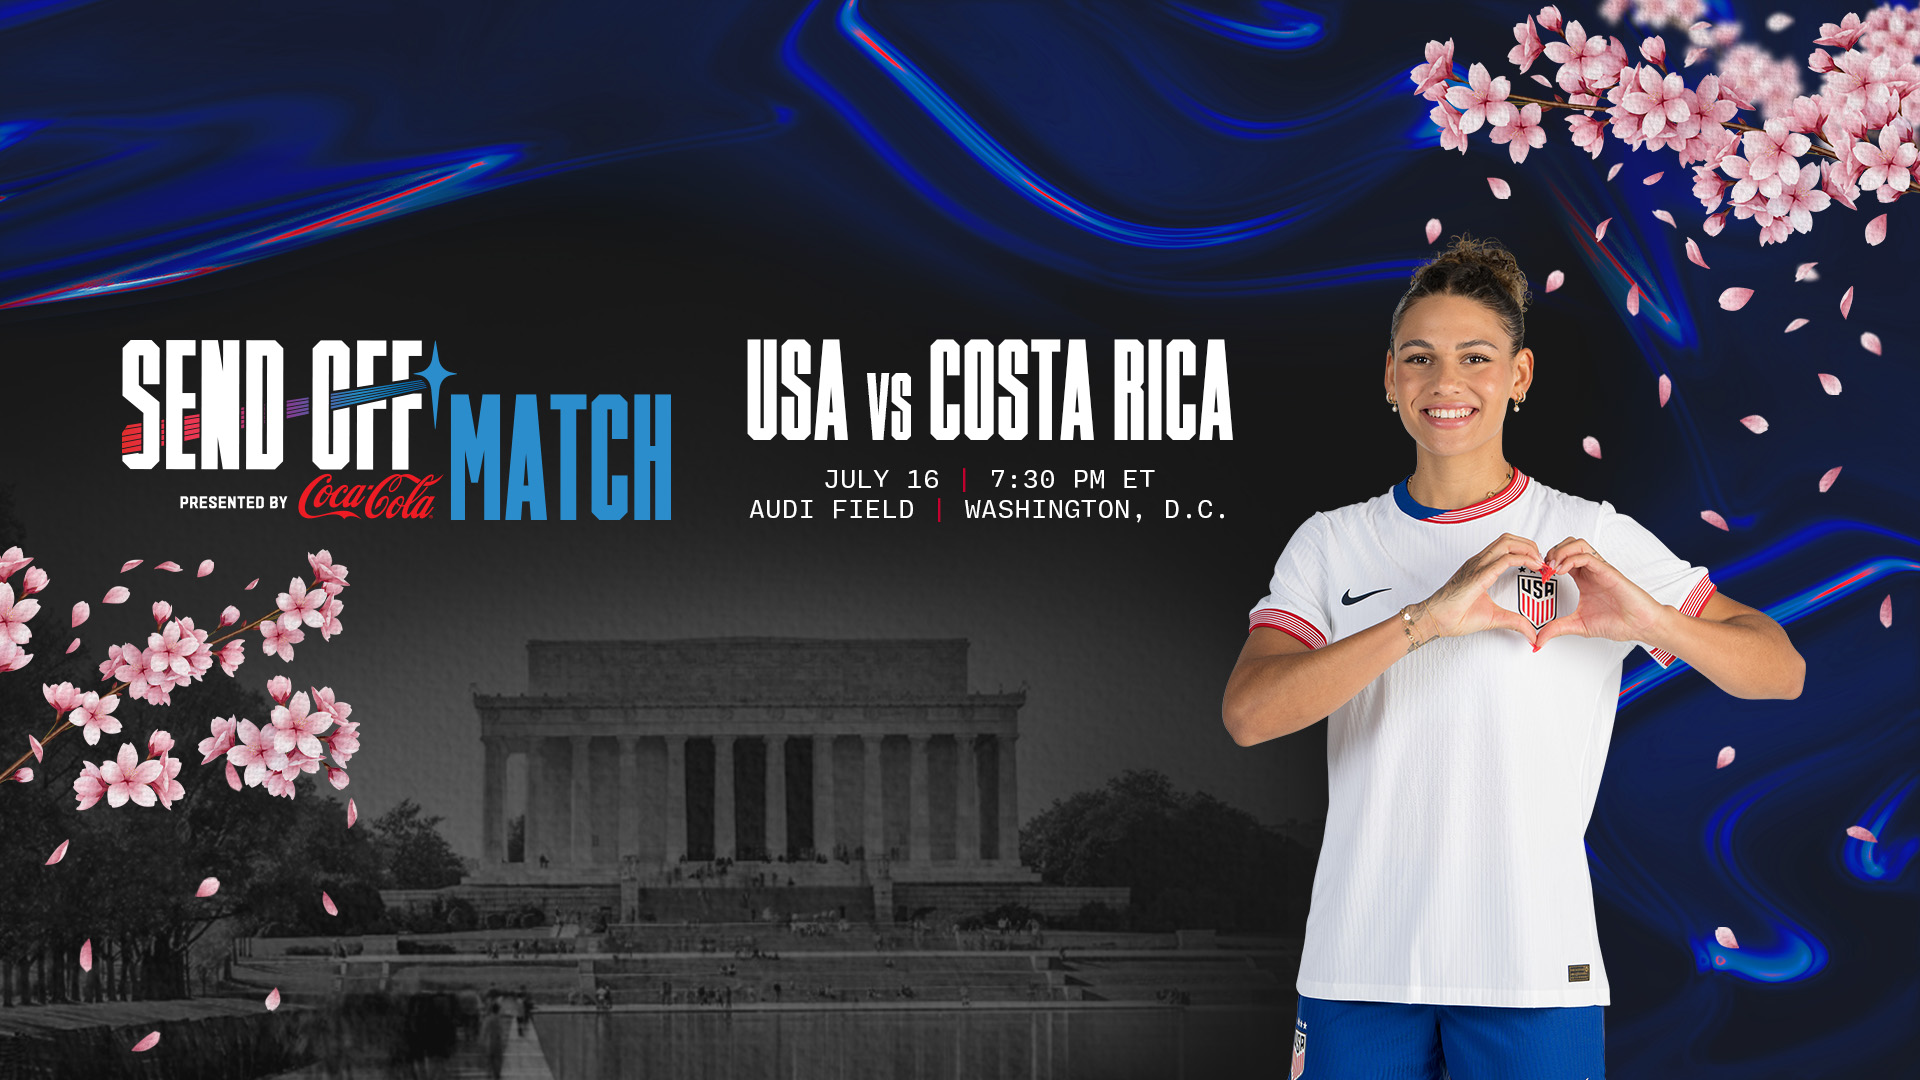 L’équipe nationale féminine des États-Unis disputera le match d’envoi des Jeux olympiques, présenté par Coca-Cola, le 16 juillet à Washington, DC contre le Costa Rica